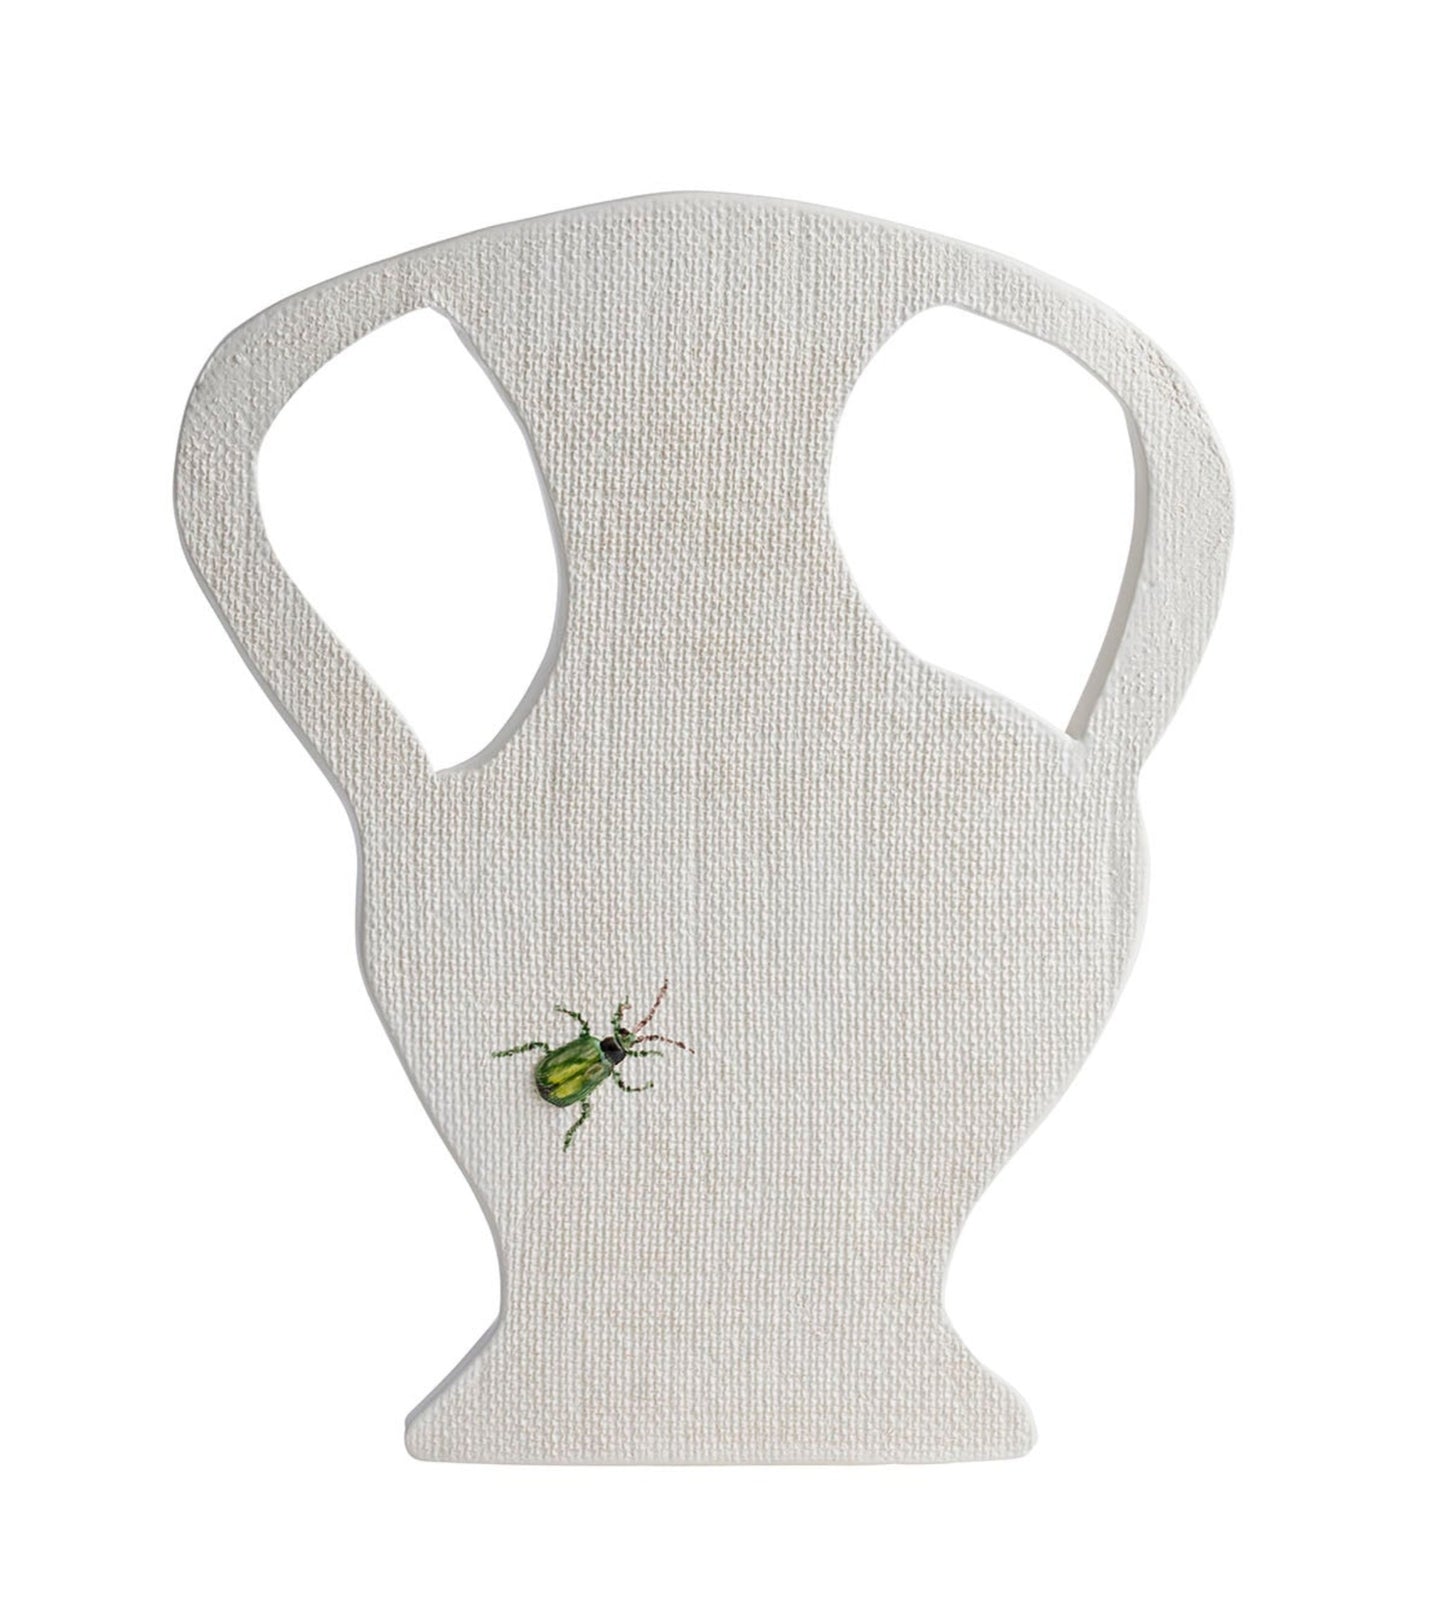 Beetle "Hippy" Vase